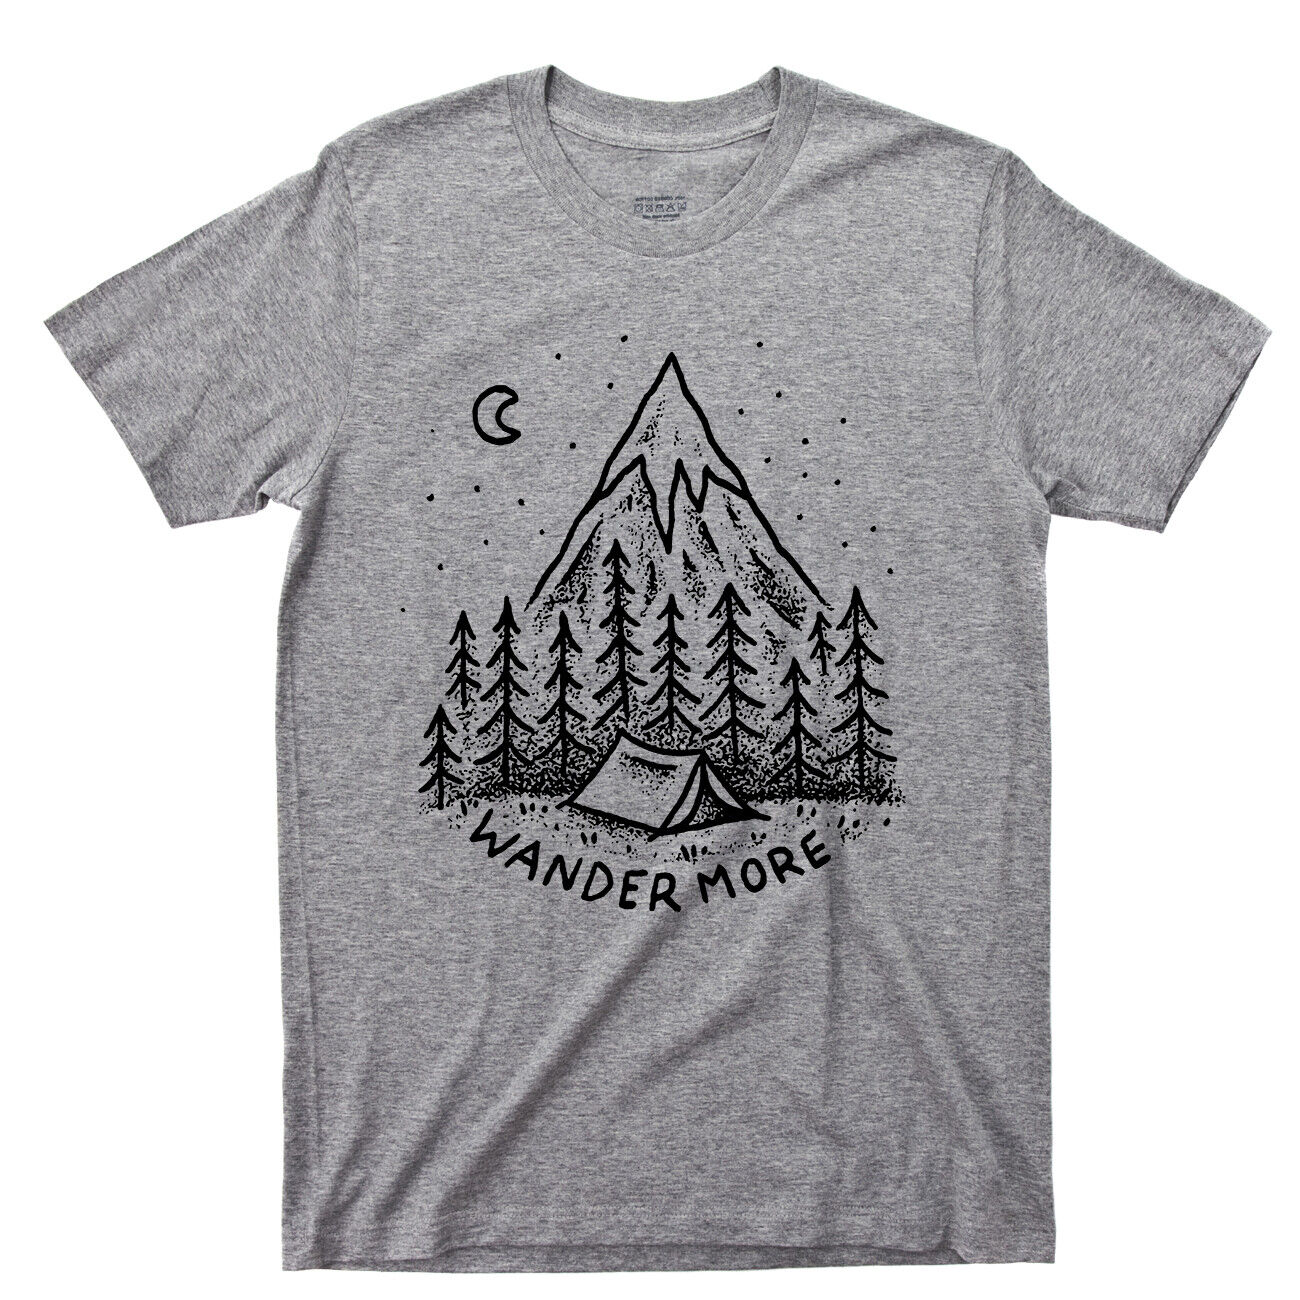 Wander More T Shirt Camping Outdoors Mountain Hiking River Appalachian Trail Tee